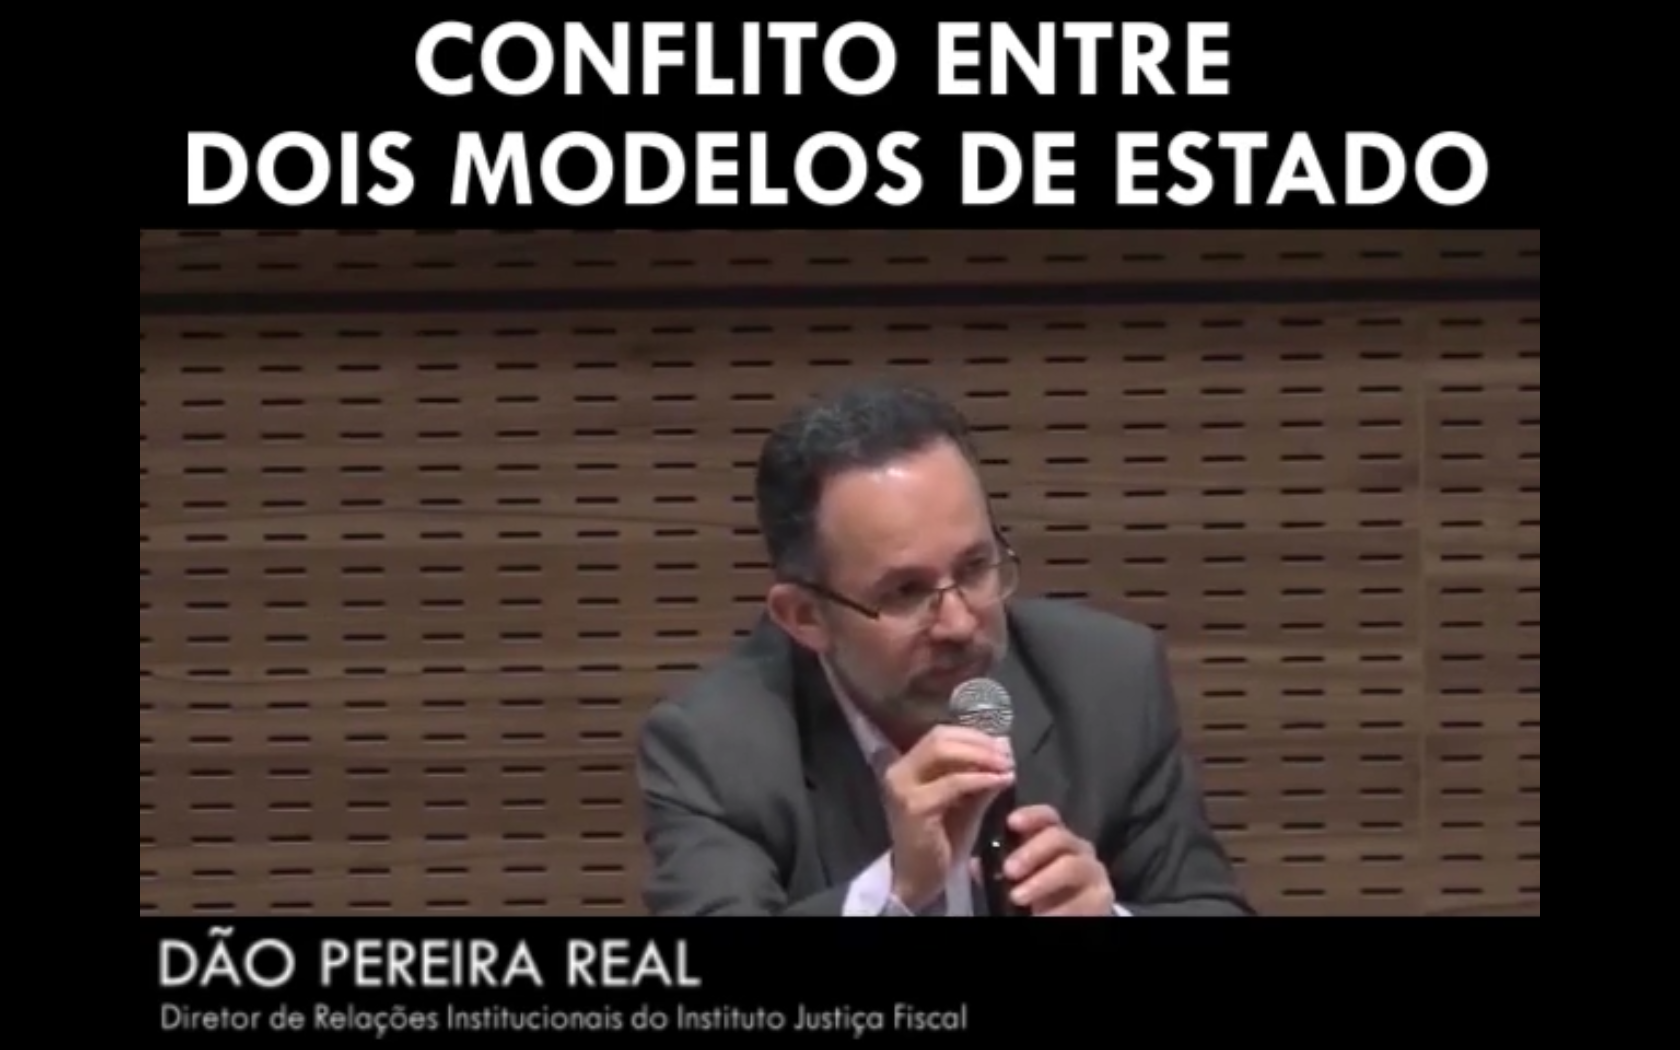 Conflito entre dois modelos de Estado - Dão Pereira Real